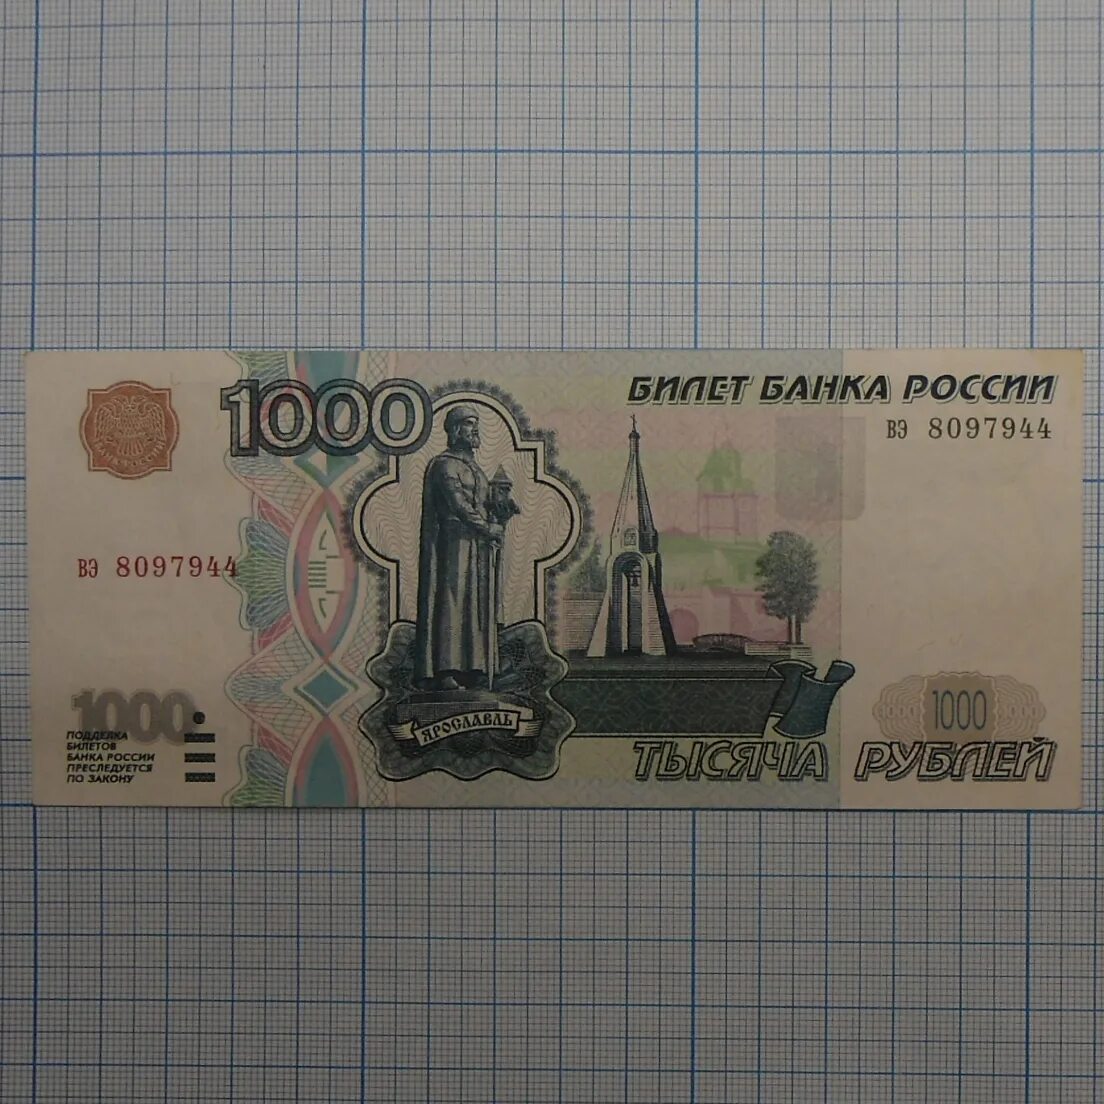 Го 1000 рублей. 1000 Рублей 1997 (модификация 2004 года) UNC. 1000 Рублей 1997 модификация 2004. Купюра 1000 рублей 1997 модификация. 1000 Рублей 2004 года модификации.